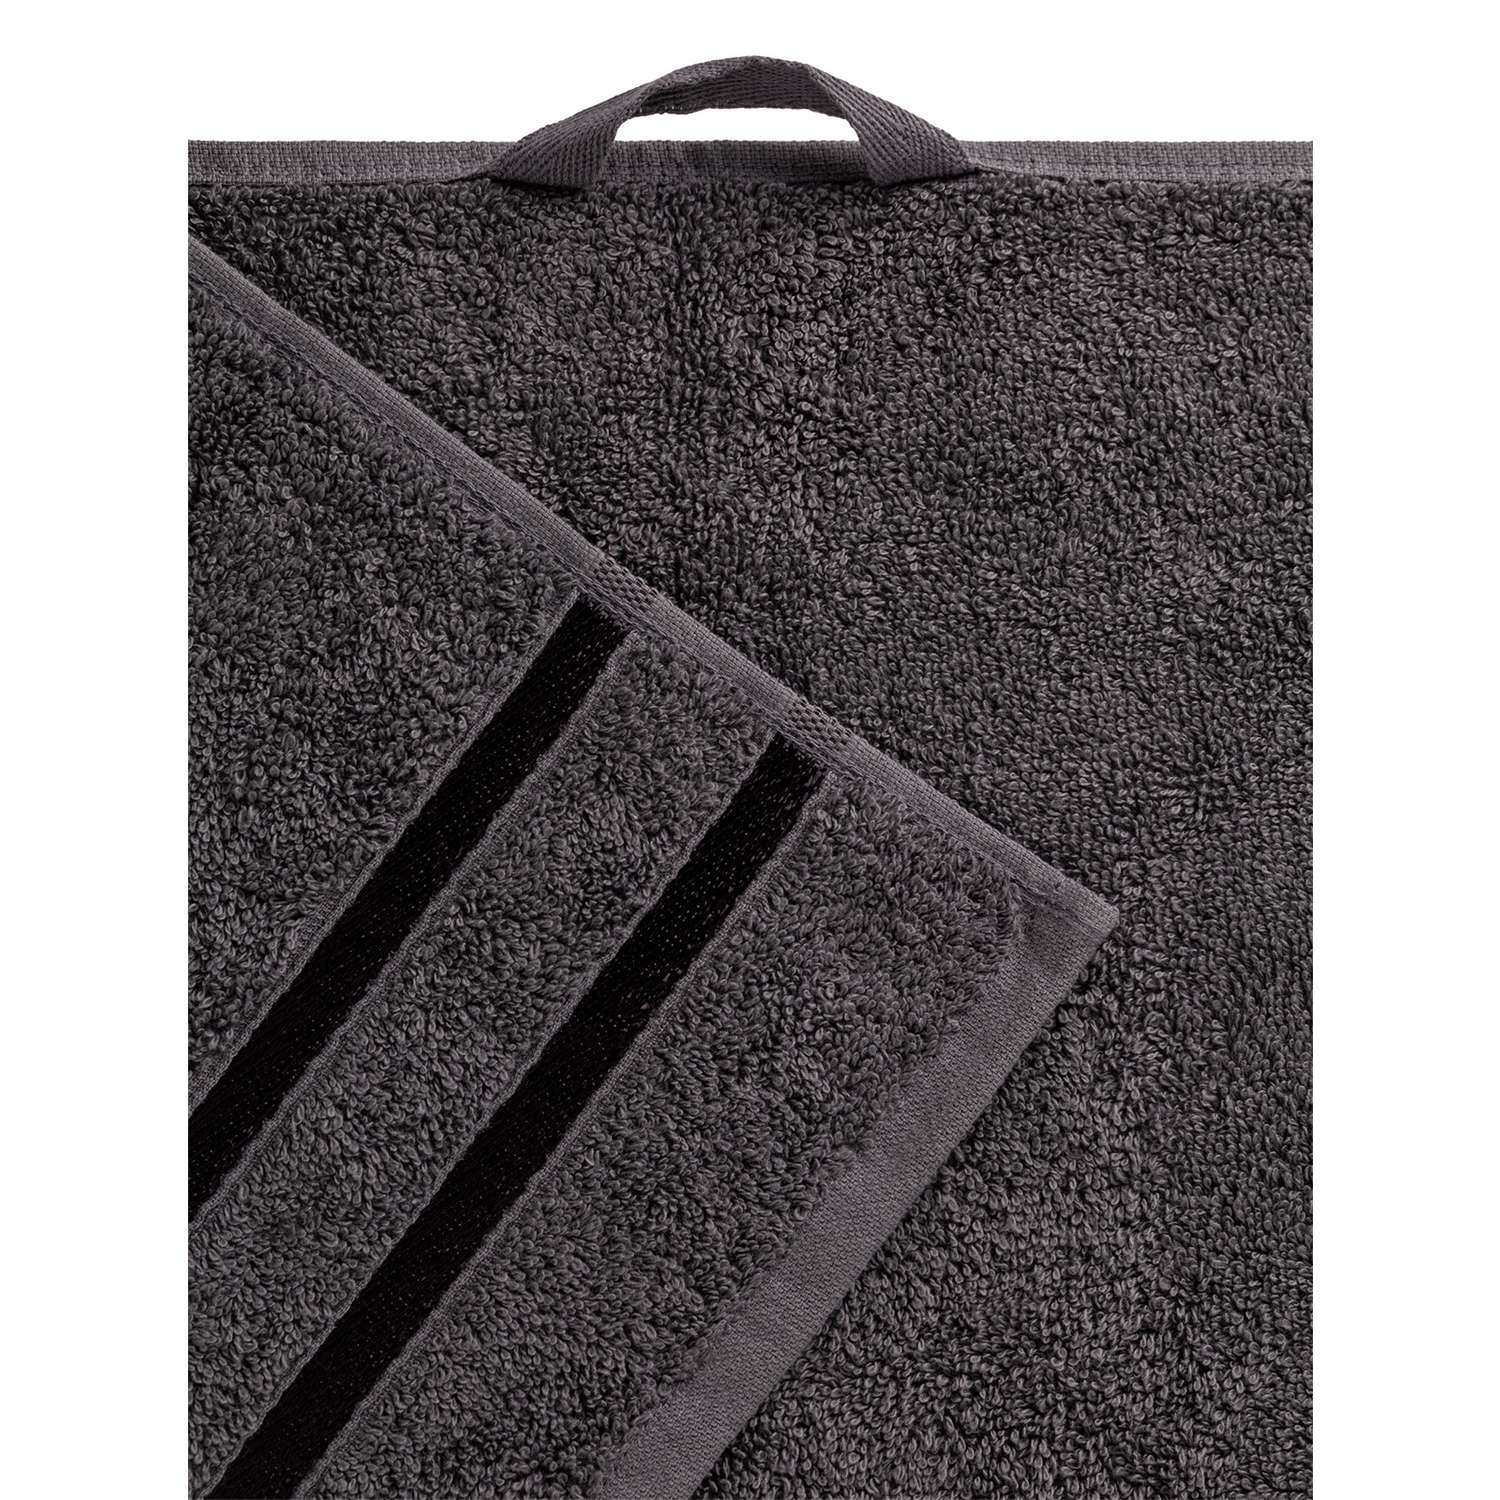 Полотенце махровое LUCKY с лентой 35x70 см 100% хлопок тёмно-серый D100320 - фото 3